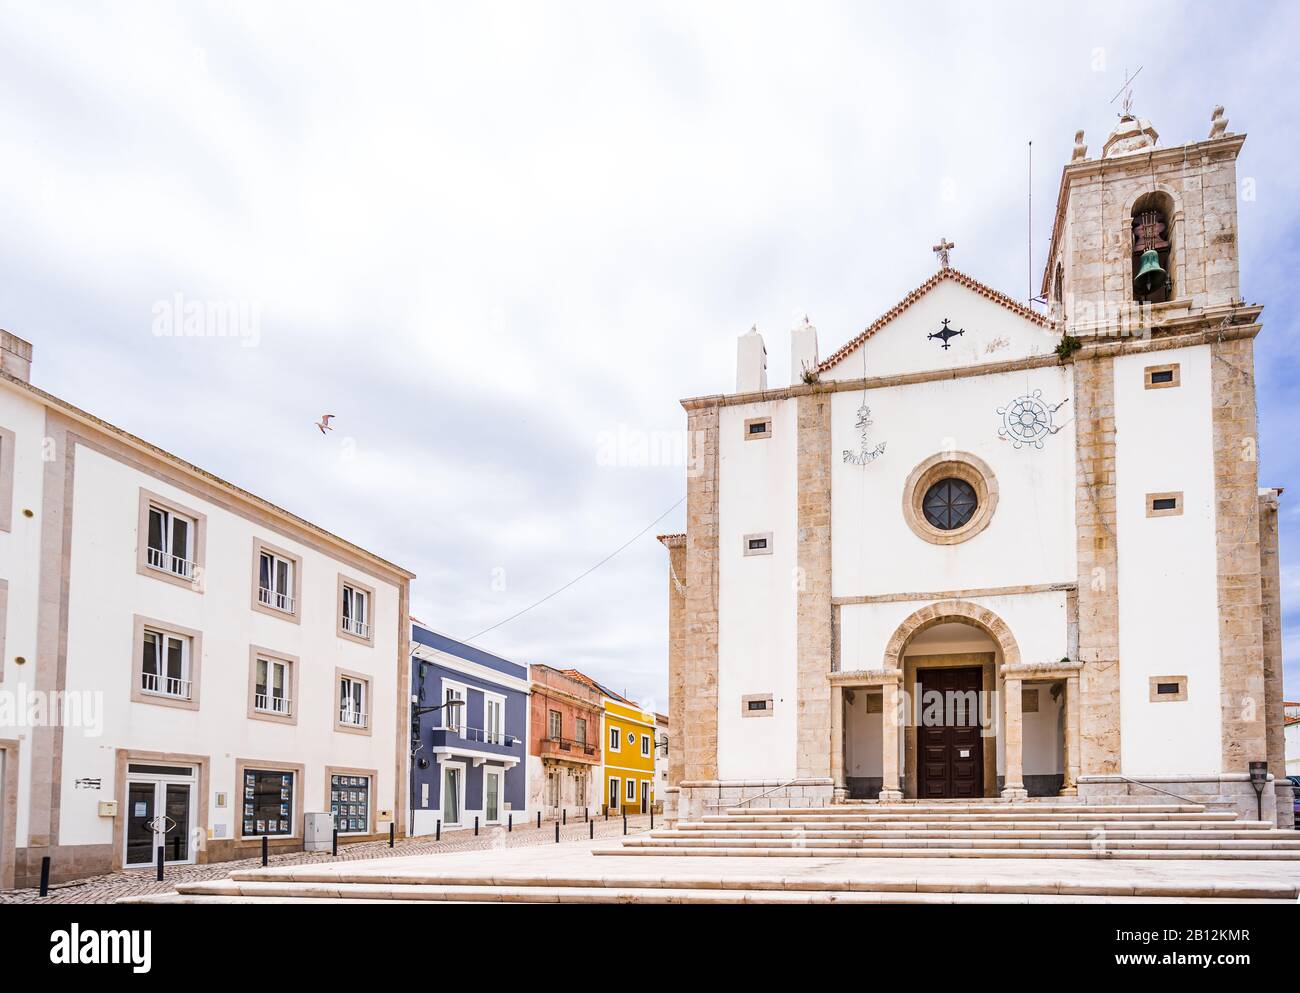 Vue sur l'église Saint-Pierre dans la vieille ville de Peniche, Portugal Banque D'Images